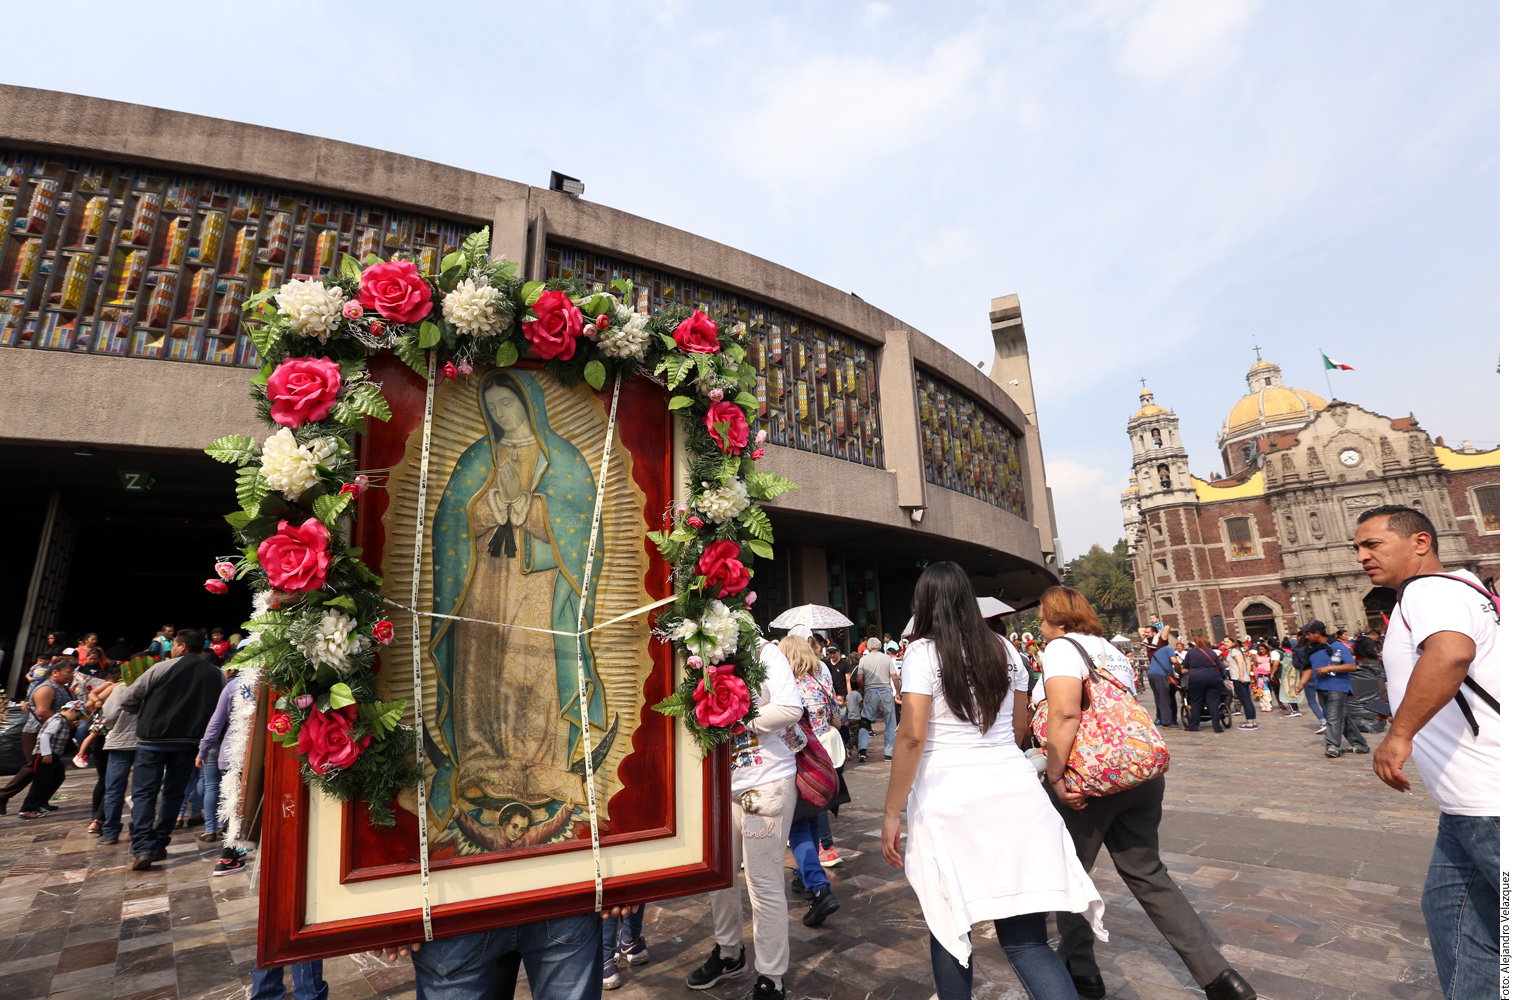 Mexicanos, los más infieles… y muy devotos a la virgen de Guadalupe